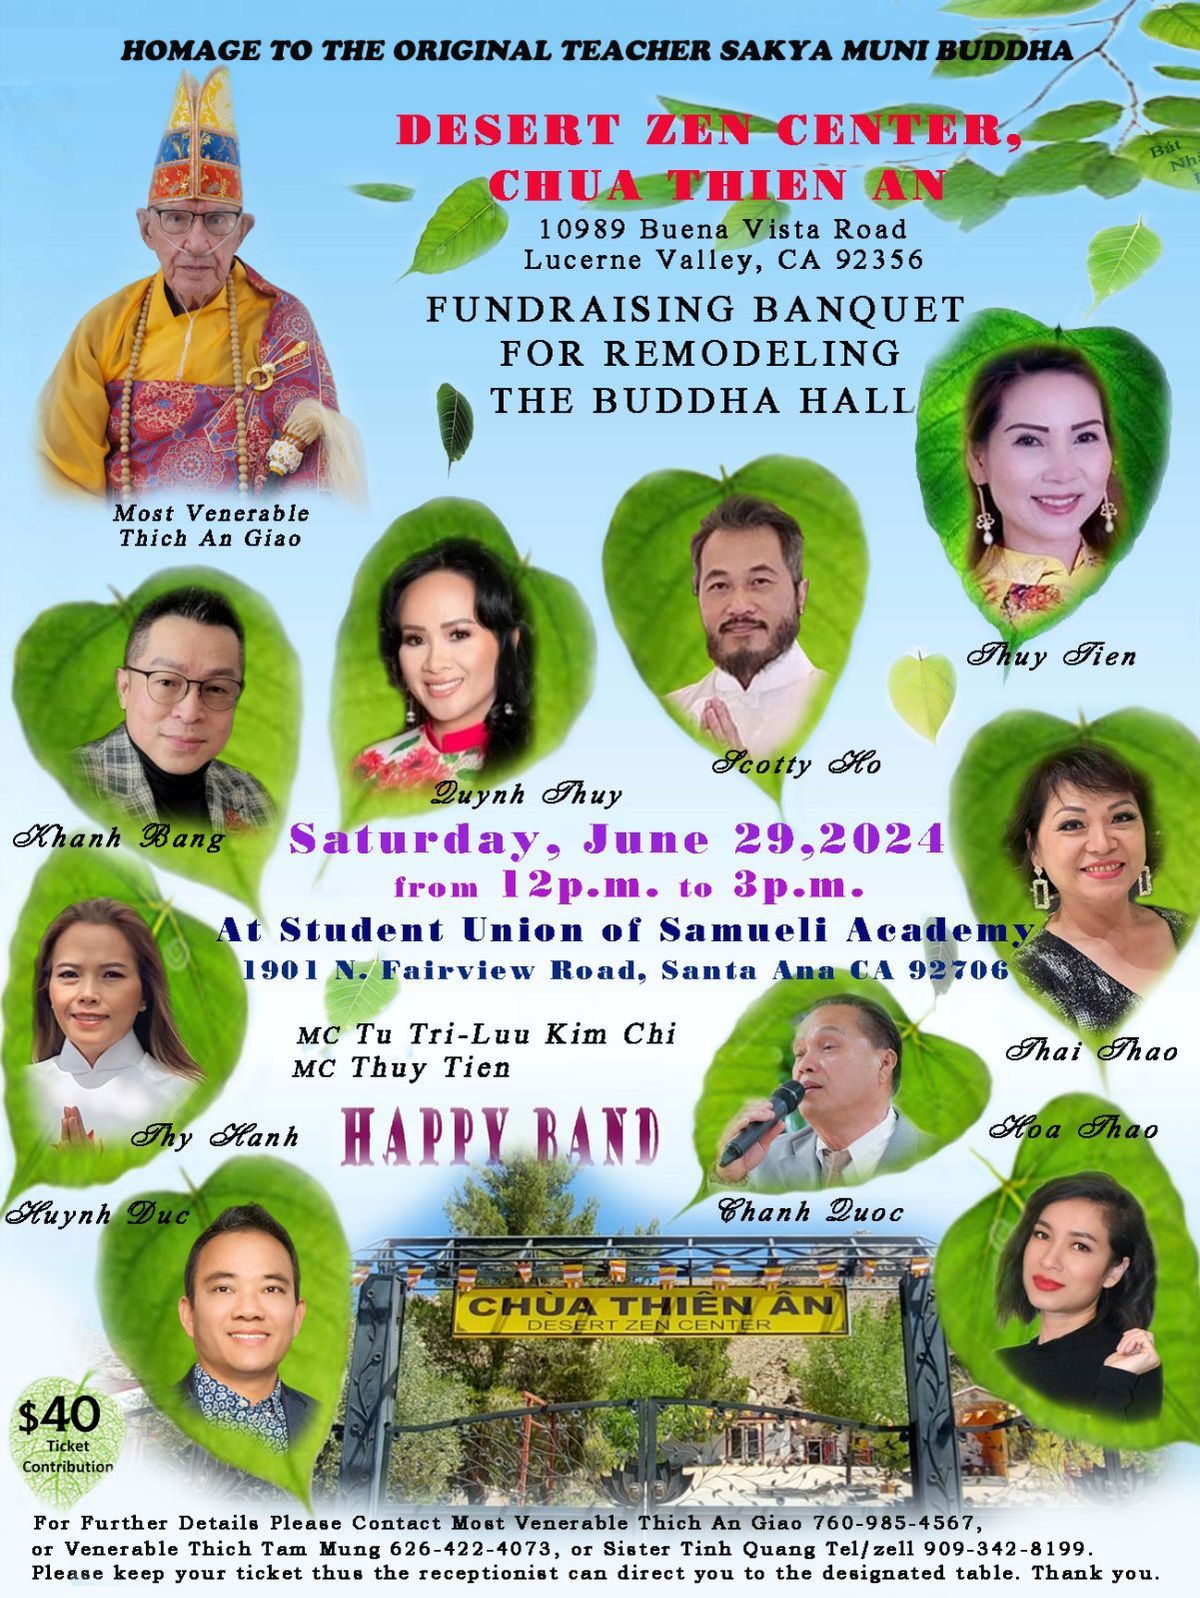 Fundraising Banquet for Chua Thien An - Desert Zen Center 